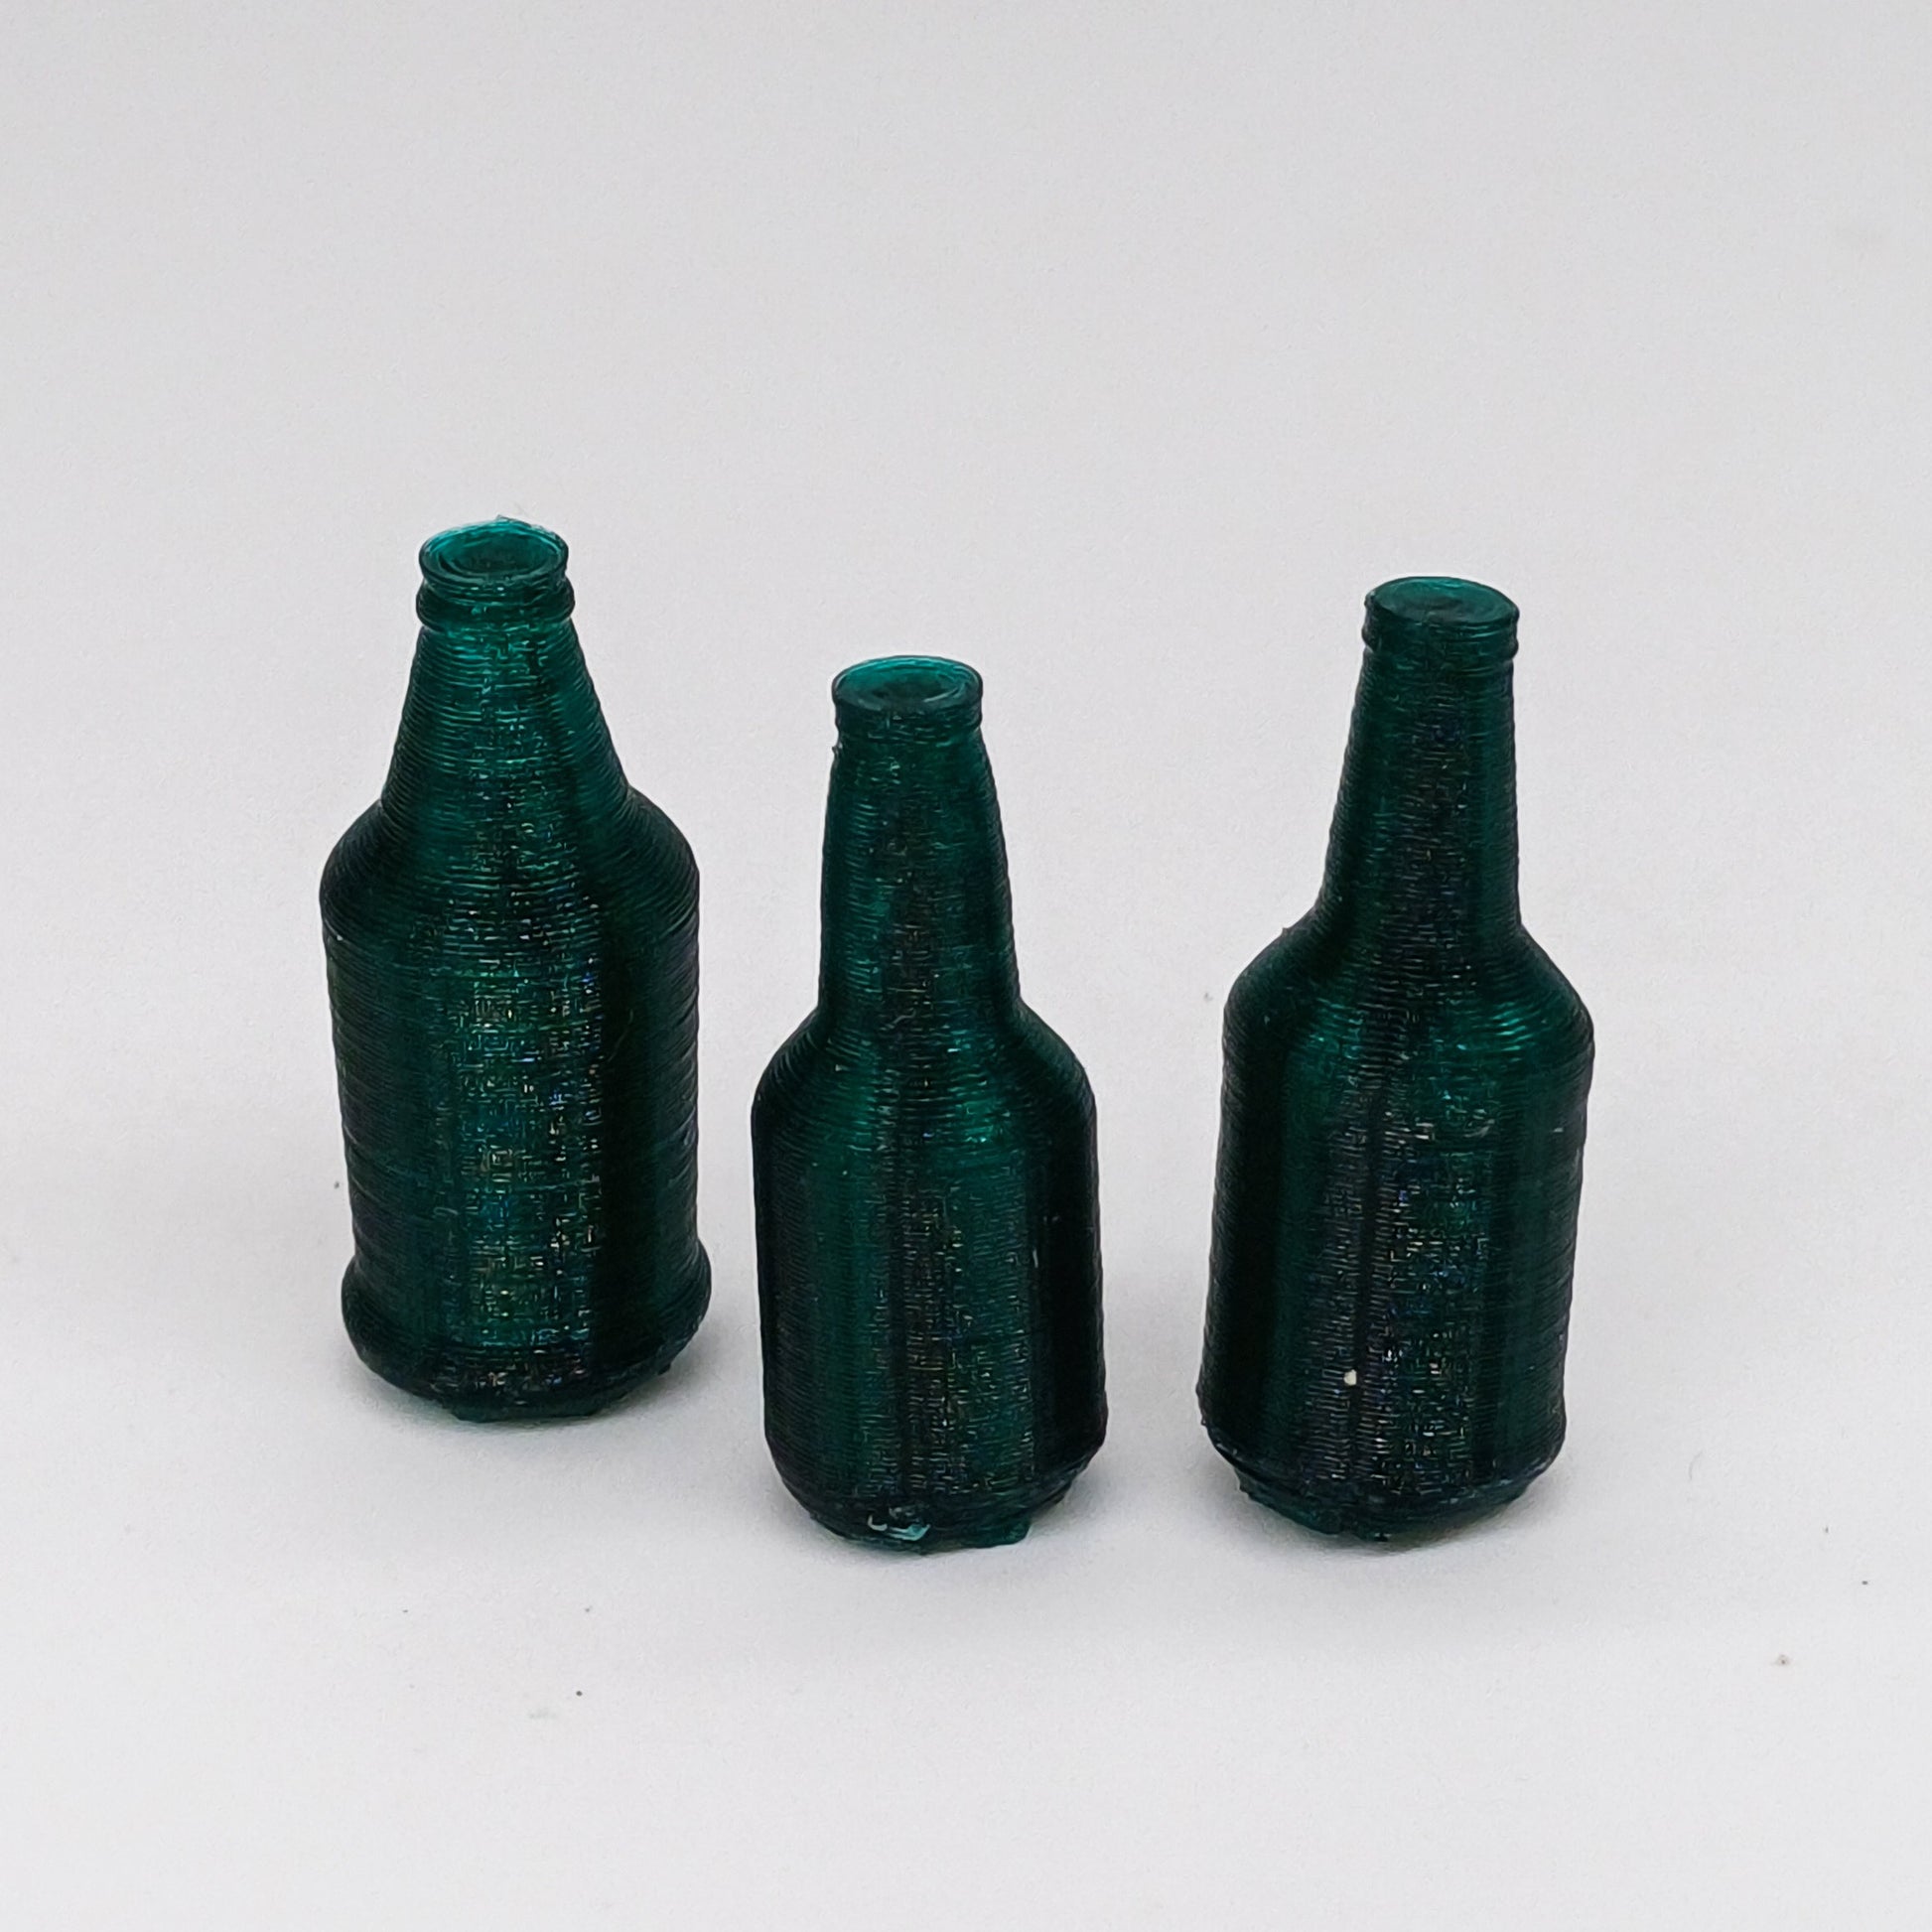 Bier Flaschen Miniaturen im Maßstab 1:12 - Flaschen Grün - Miniaturen